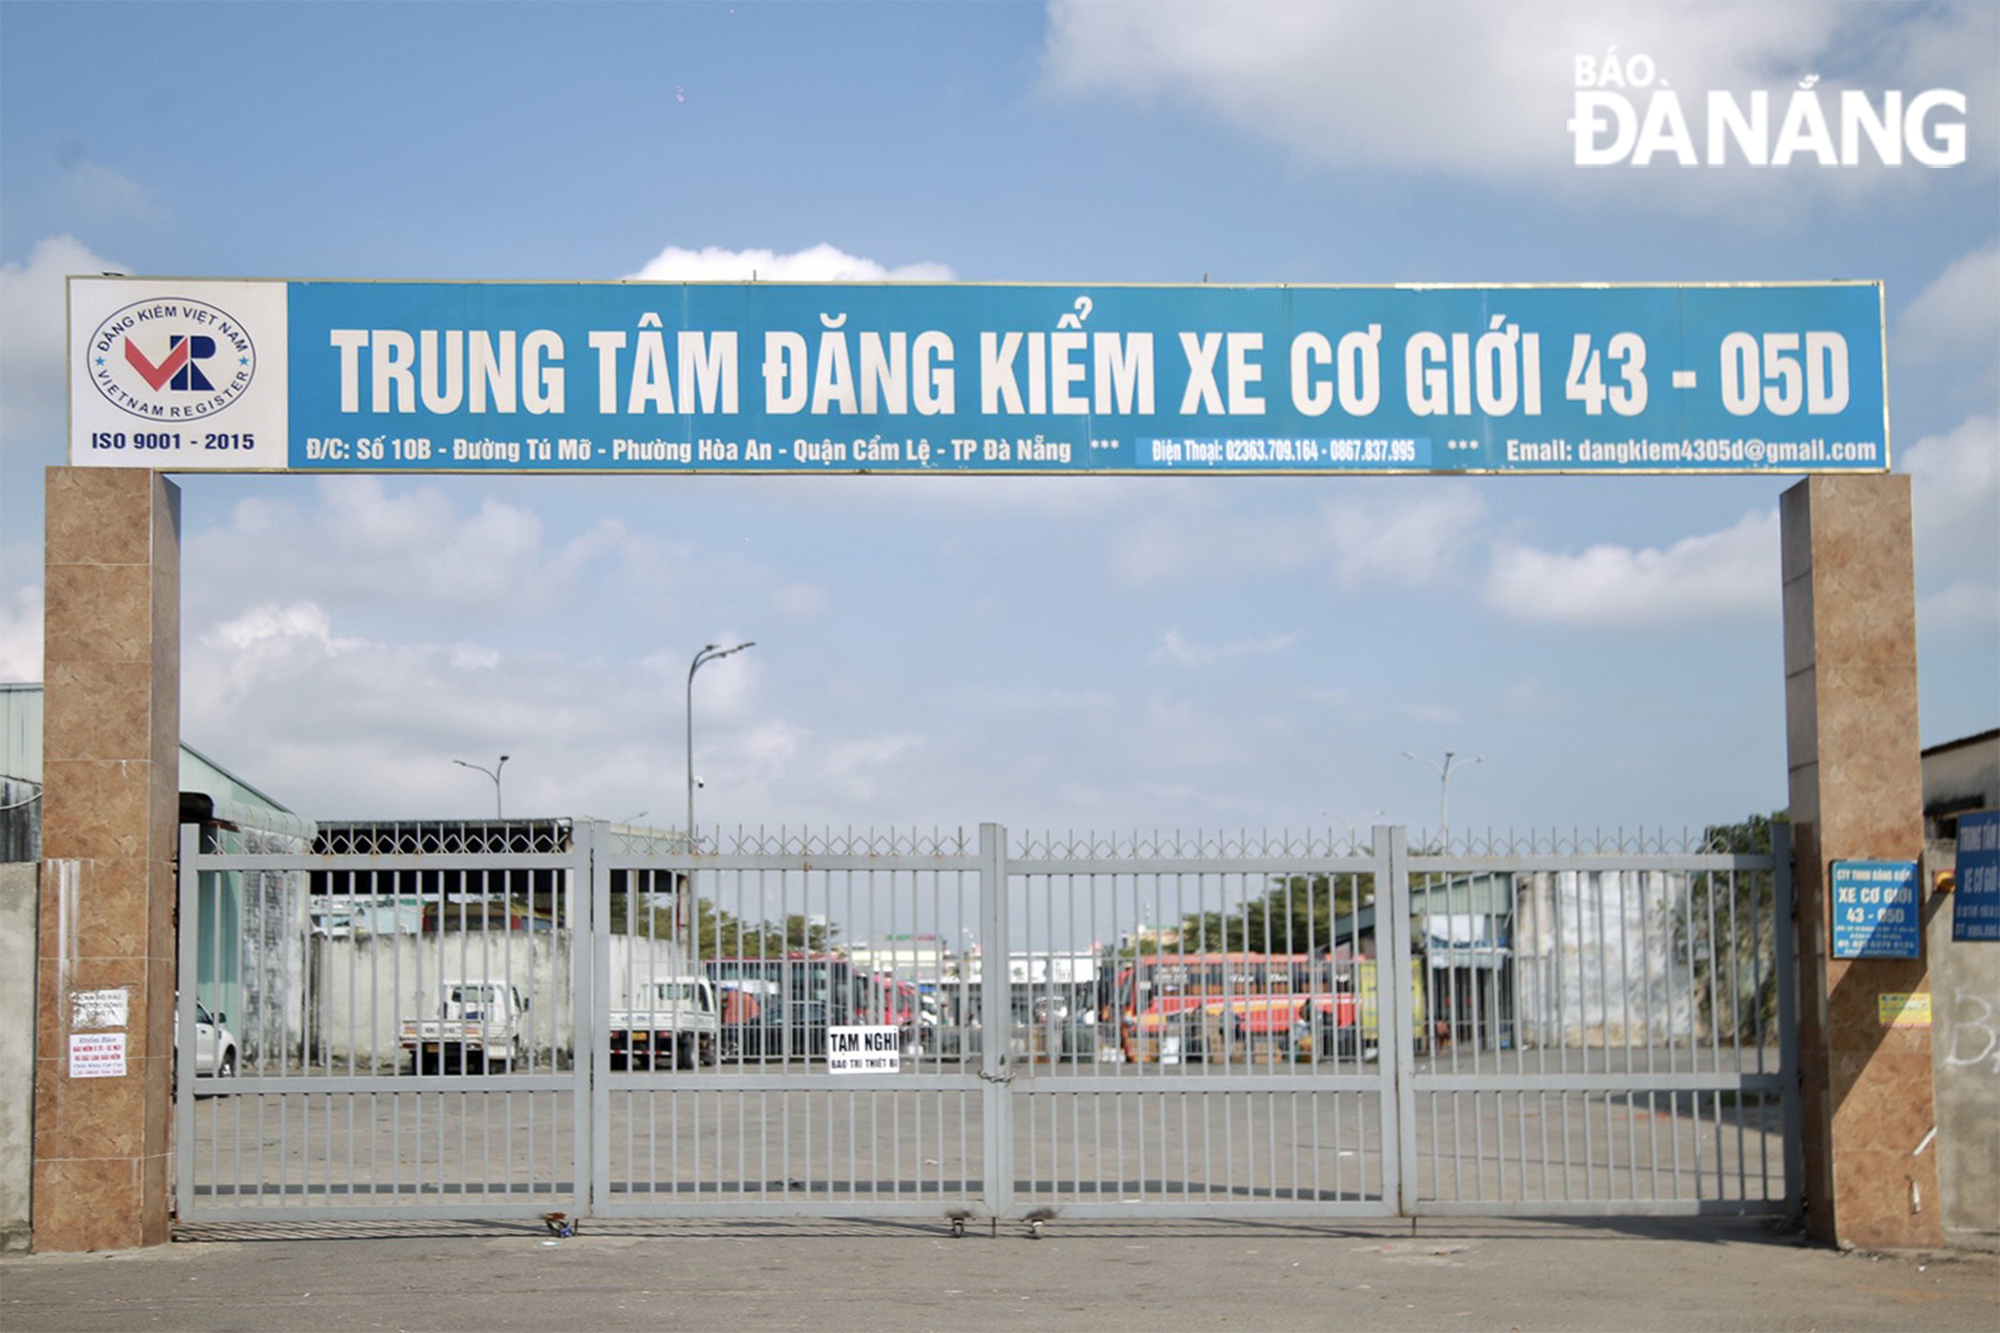 Trung tâm đăng kiểm xe cơ giới 43.05D trên đường Tú Mỡ (phường Hòa An, quận Cẩm Lệ) đóng cửa trong sáng 10-2 với lý do 